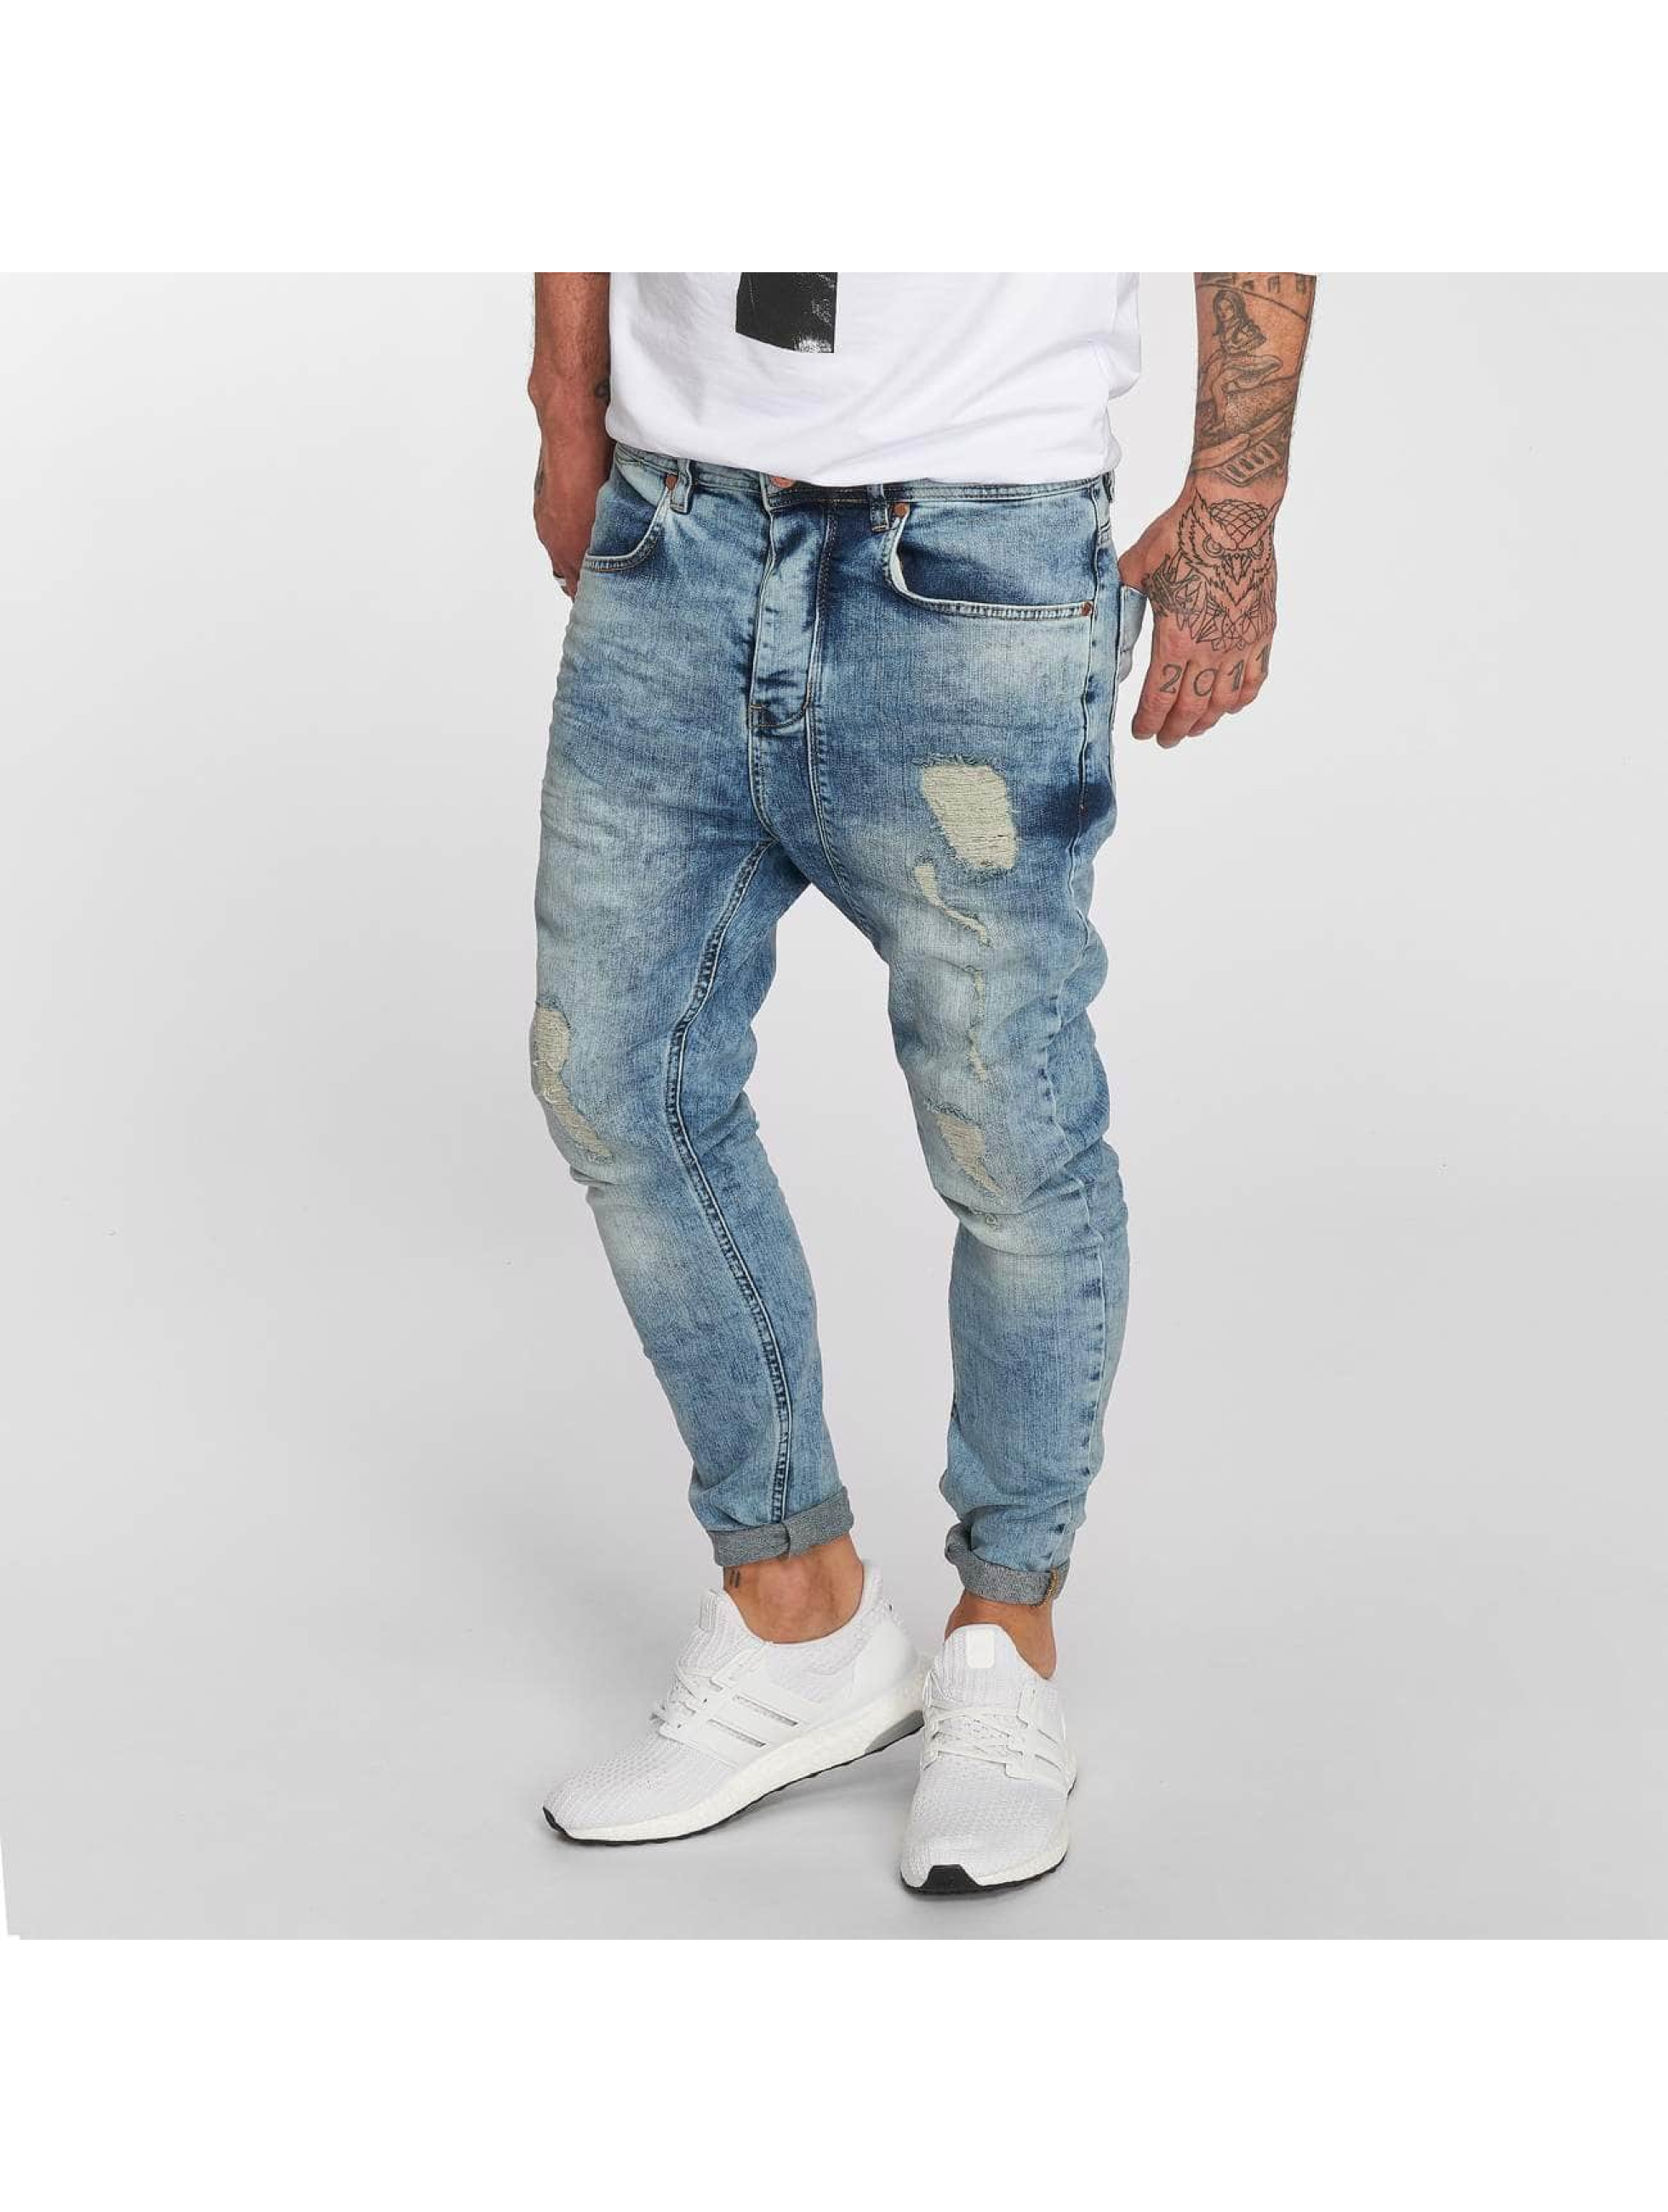 VSCT Clubwear Jeans / Antifit Keanu Lowcrotch in blauw